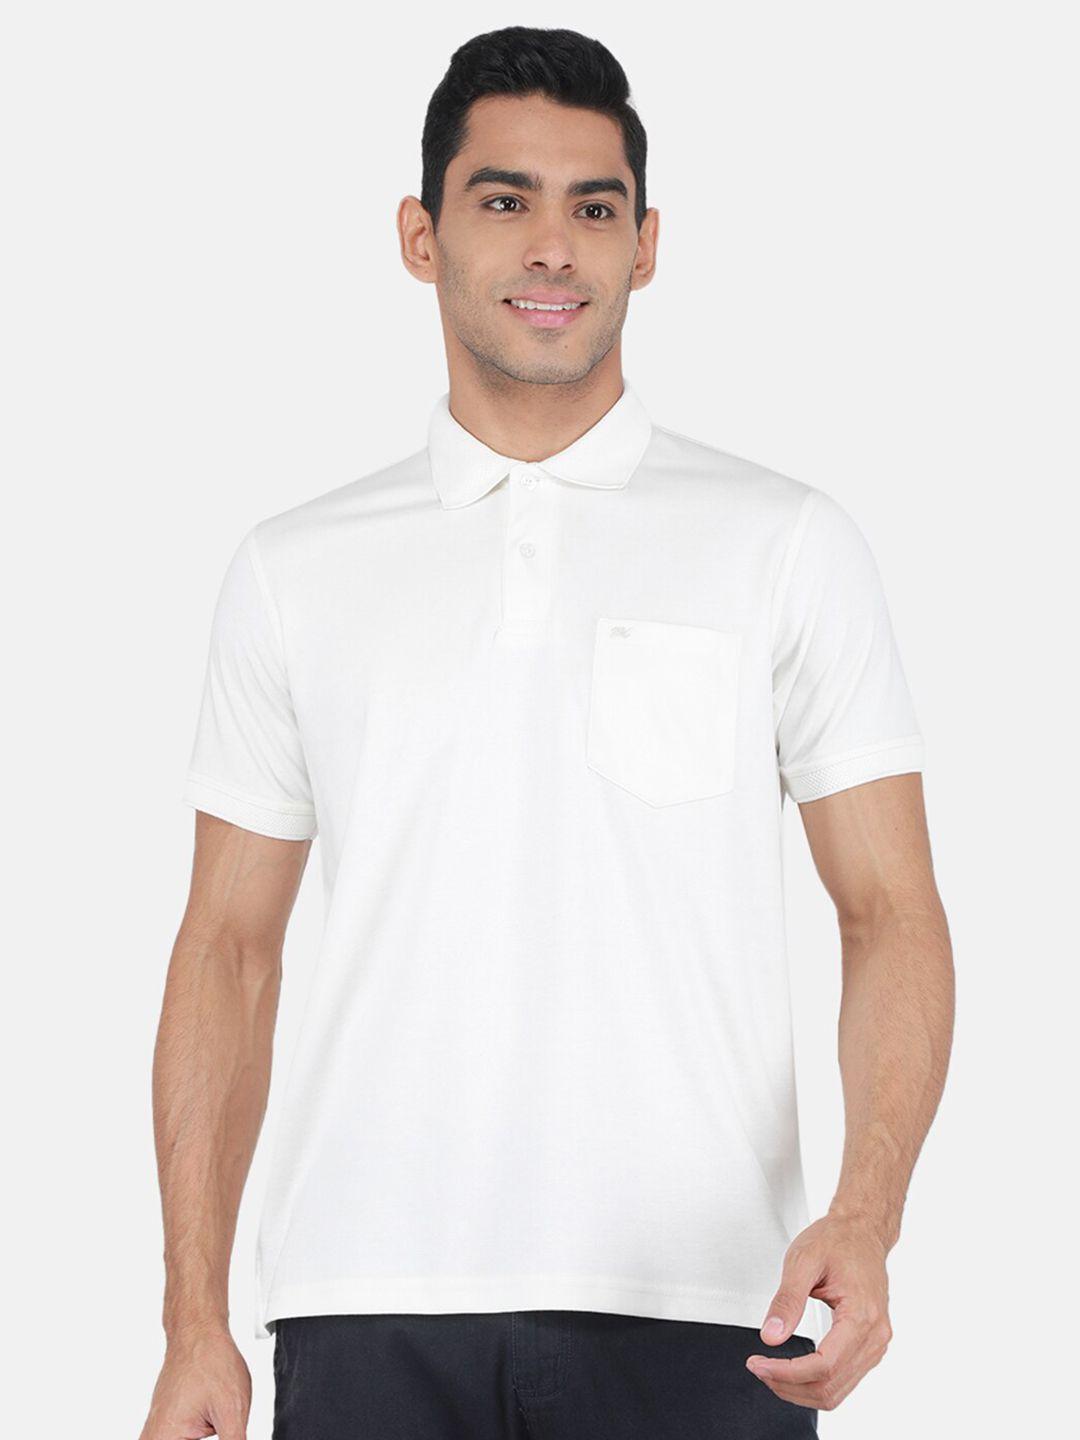 monte-carlo-polo-collar-short-sleeves-t-shirt